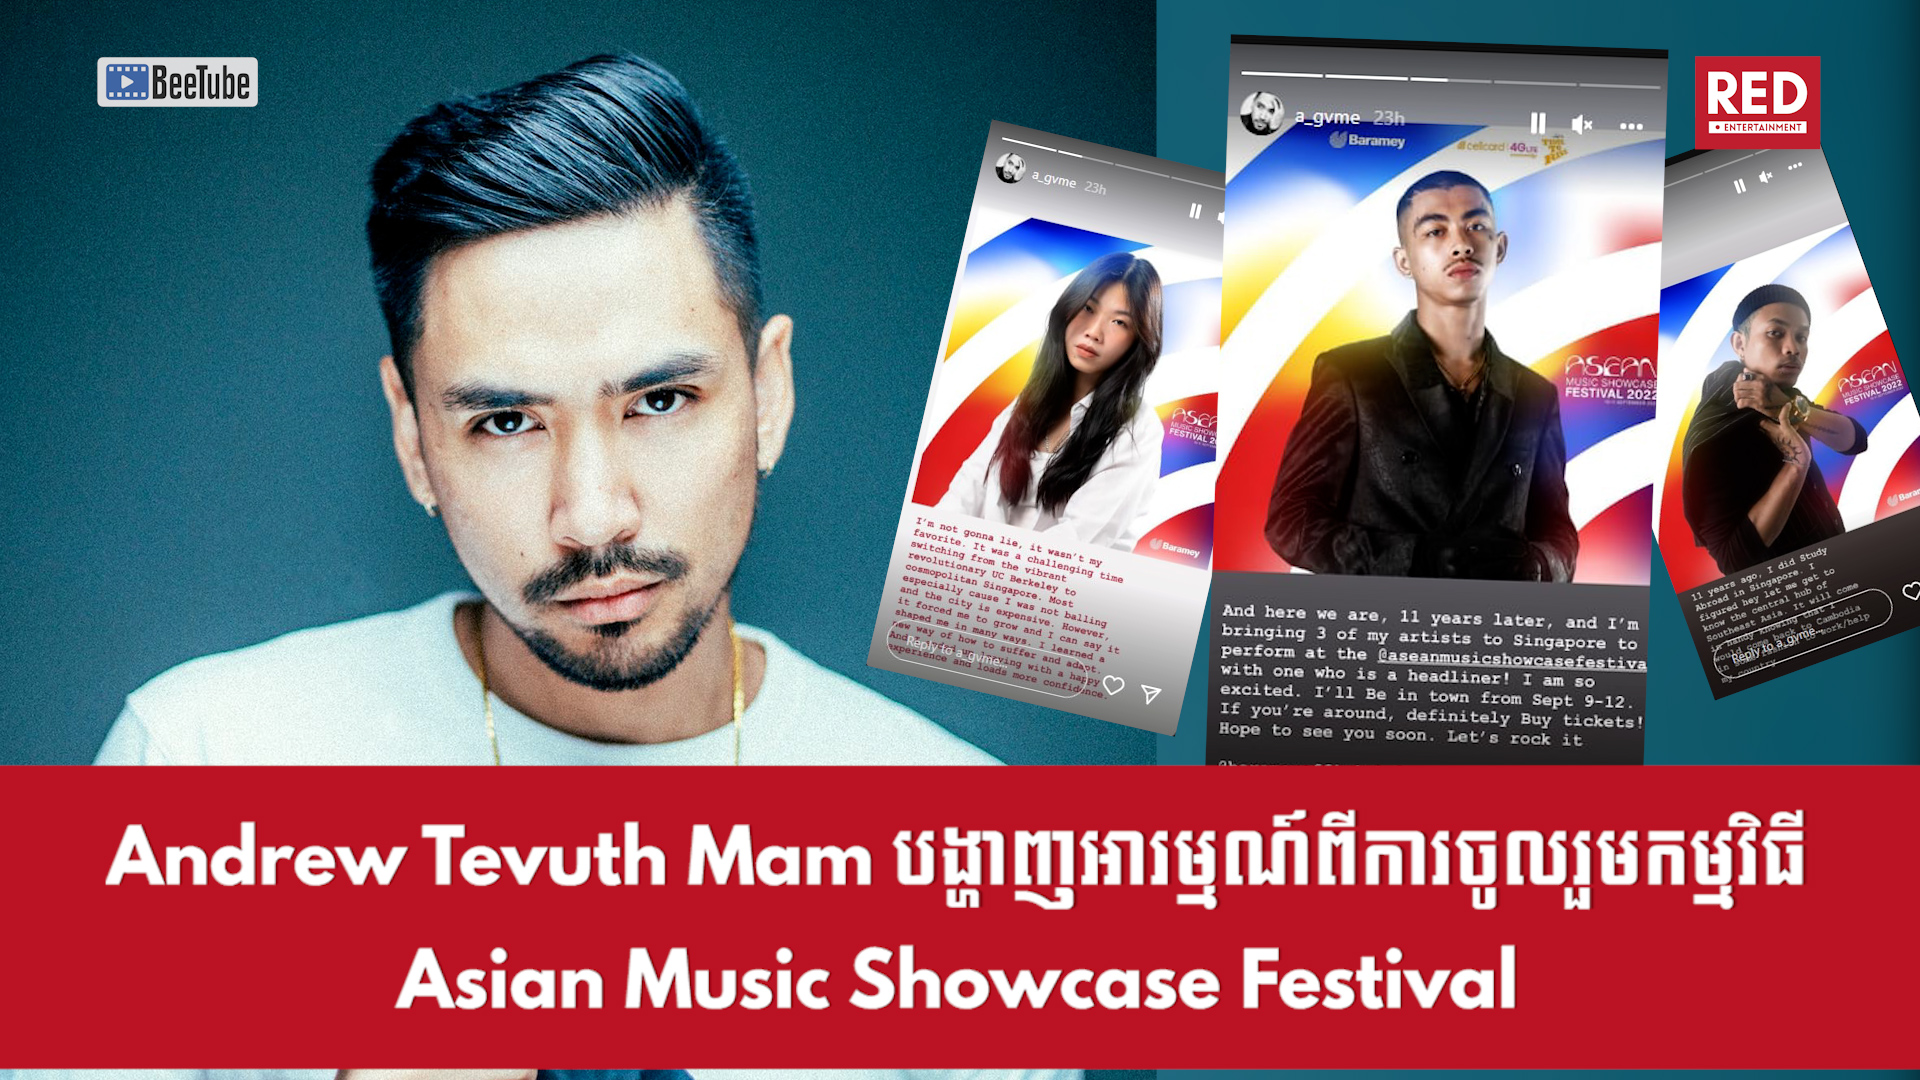 អ្នកគ្រប់គ្រងក្រុមបារមី Andrew Tevuth Mam បង្ហាញអារម្មណ៍ពីការចូលរួមកម្មវិធី Asean Music Showcase Festival របស់វណ្ណដា